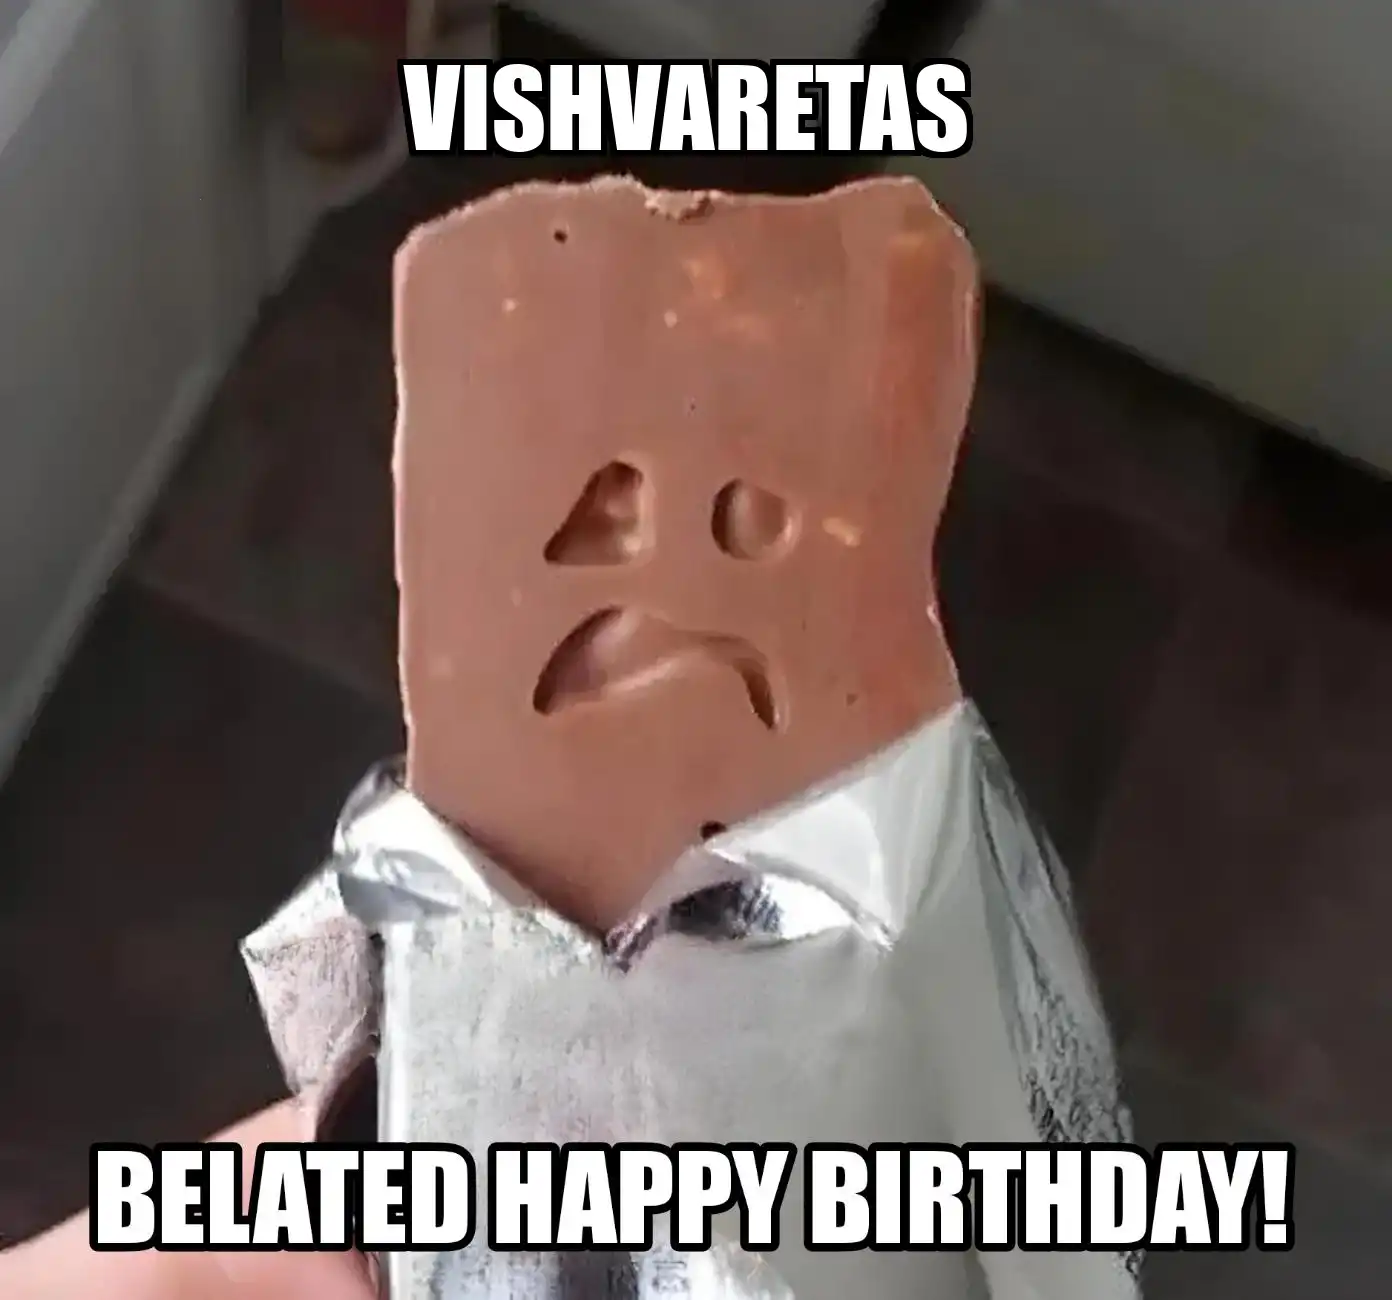 Happy Birthday Vishvaretas Belated Happy Birthday Meme